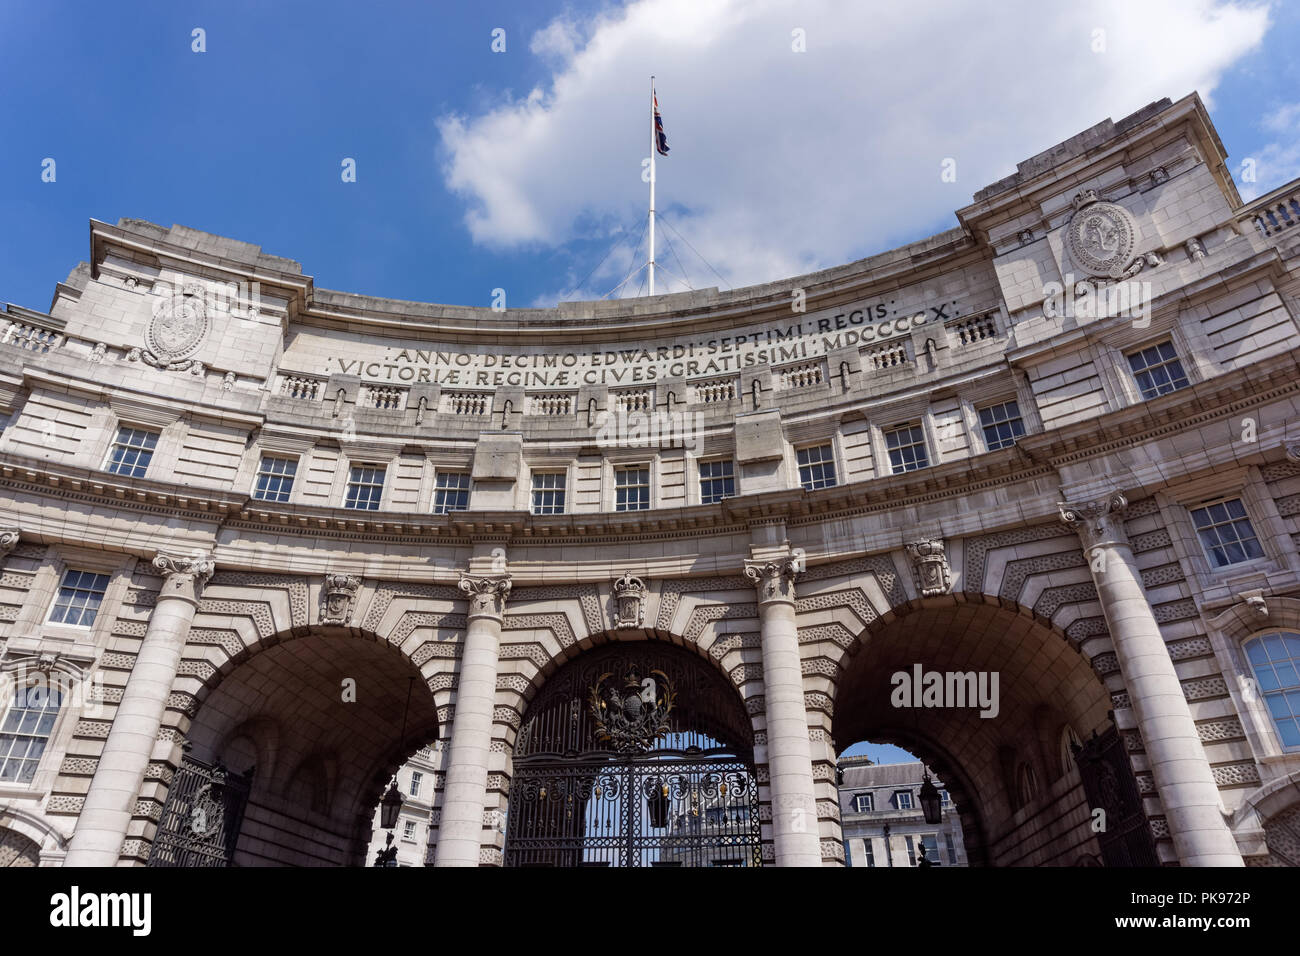 L'Admiralty Arch dans le Mall, conçu par Sir Aston Webb, Londres Angleterre Royaume-Uni UK Banque D'Images